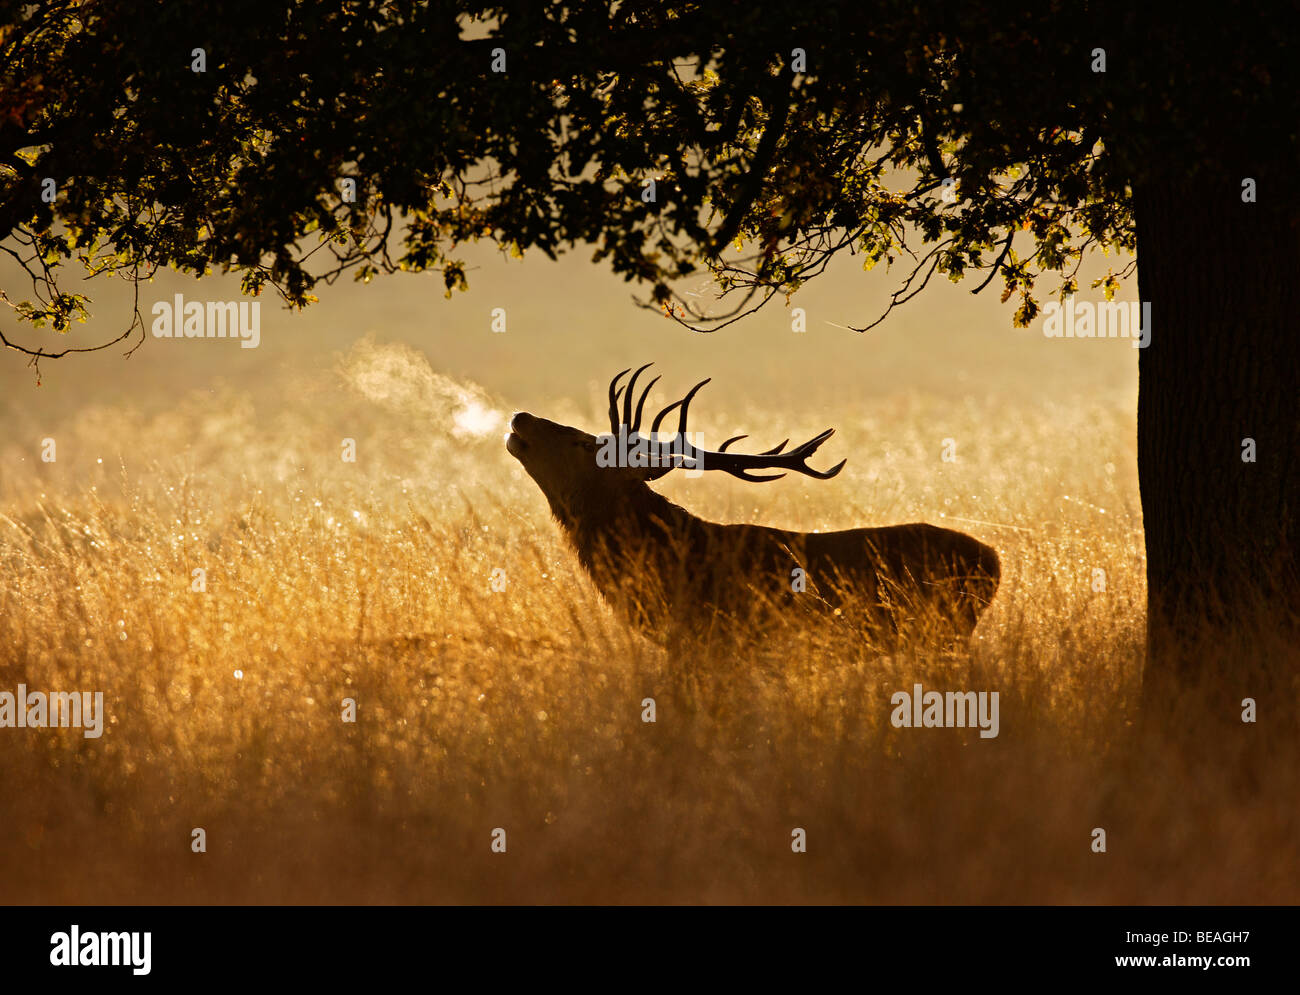 Red Deer Hirsch Cervus elaphus Stockfoto